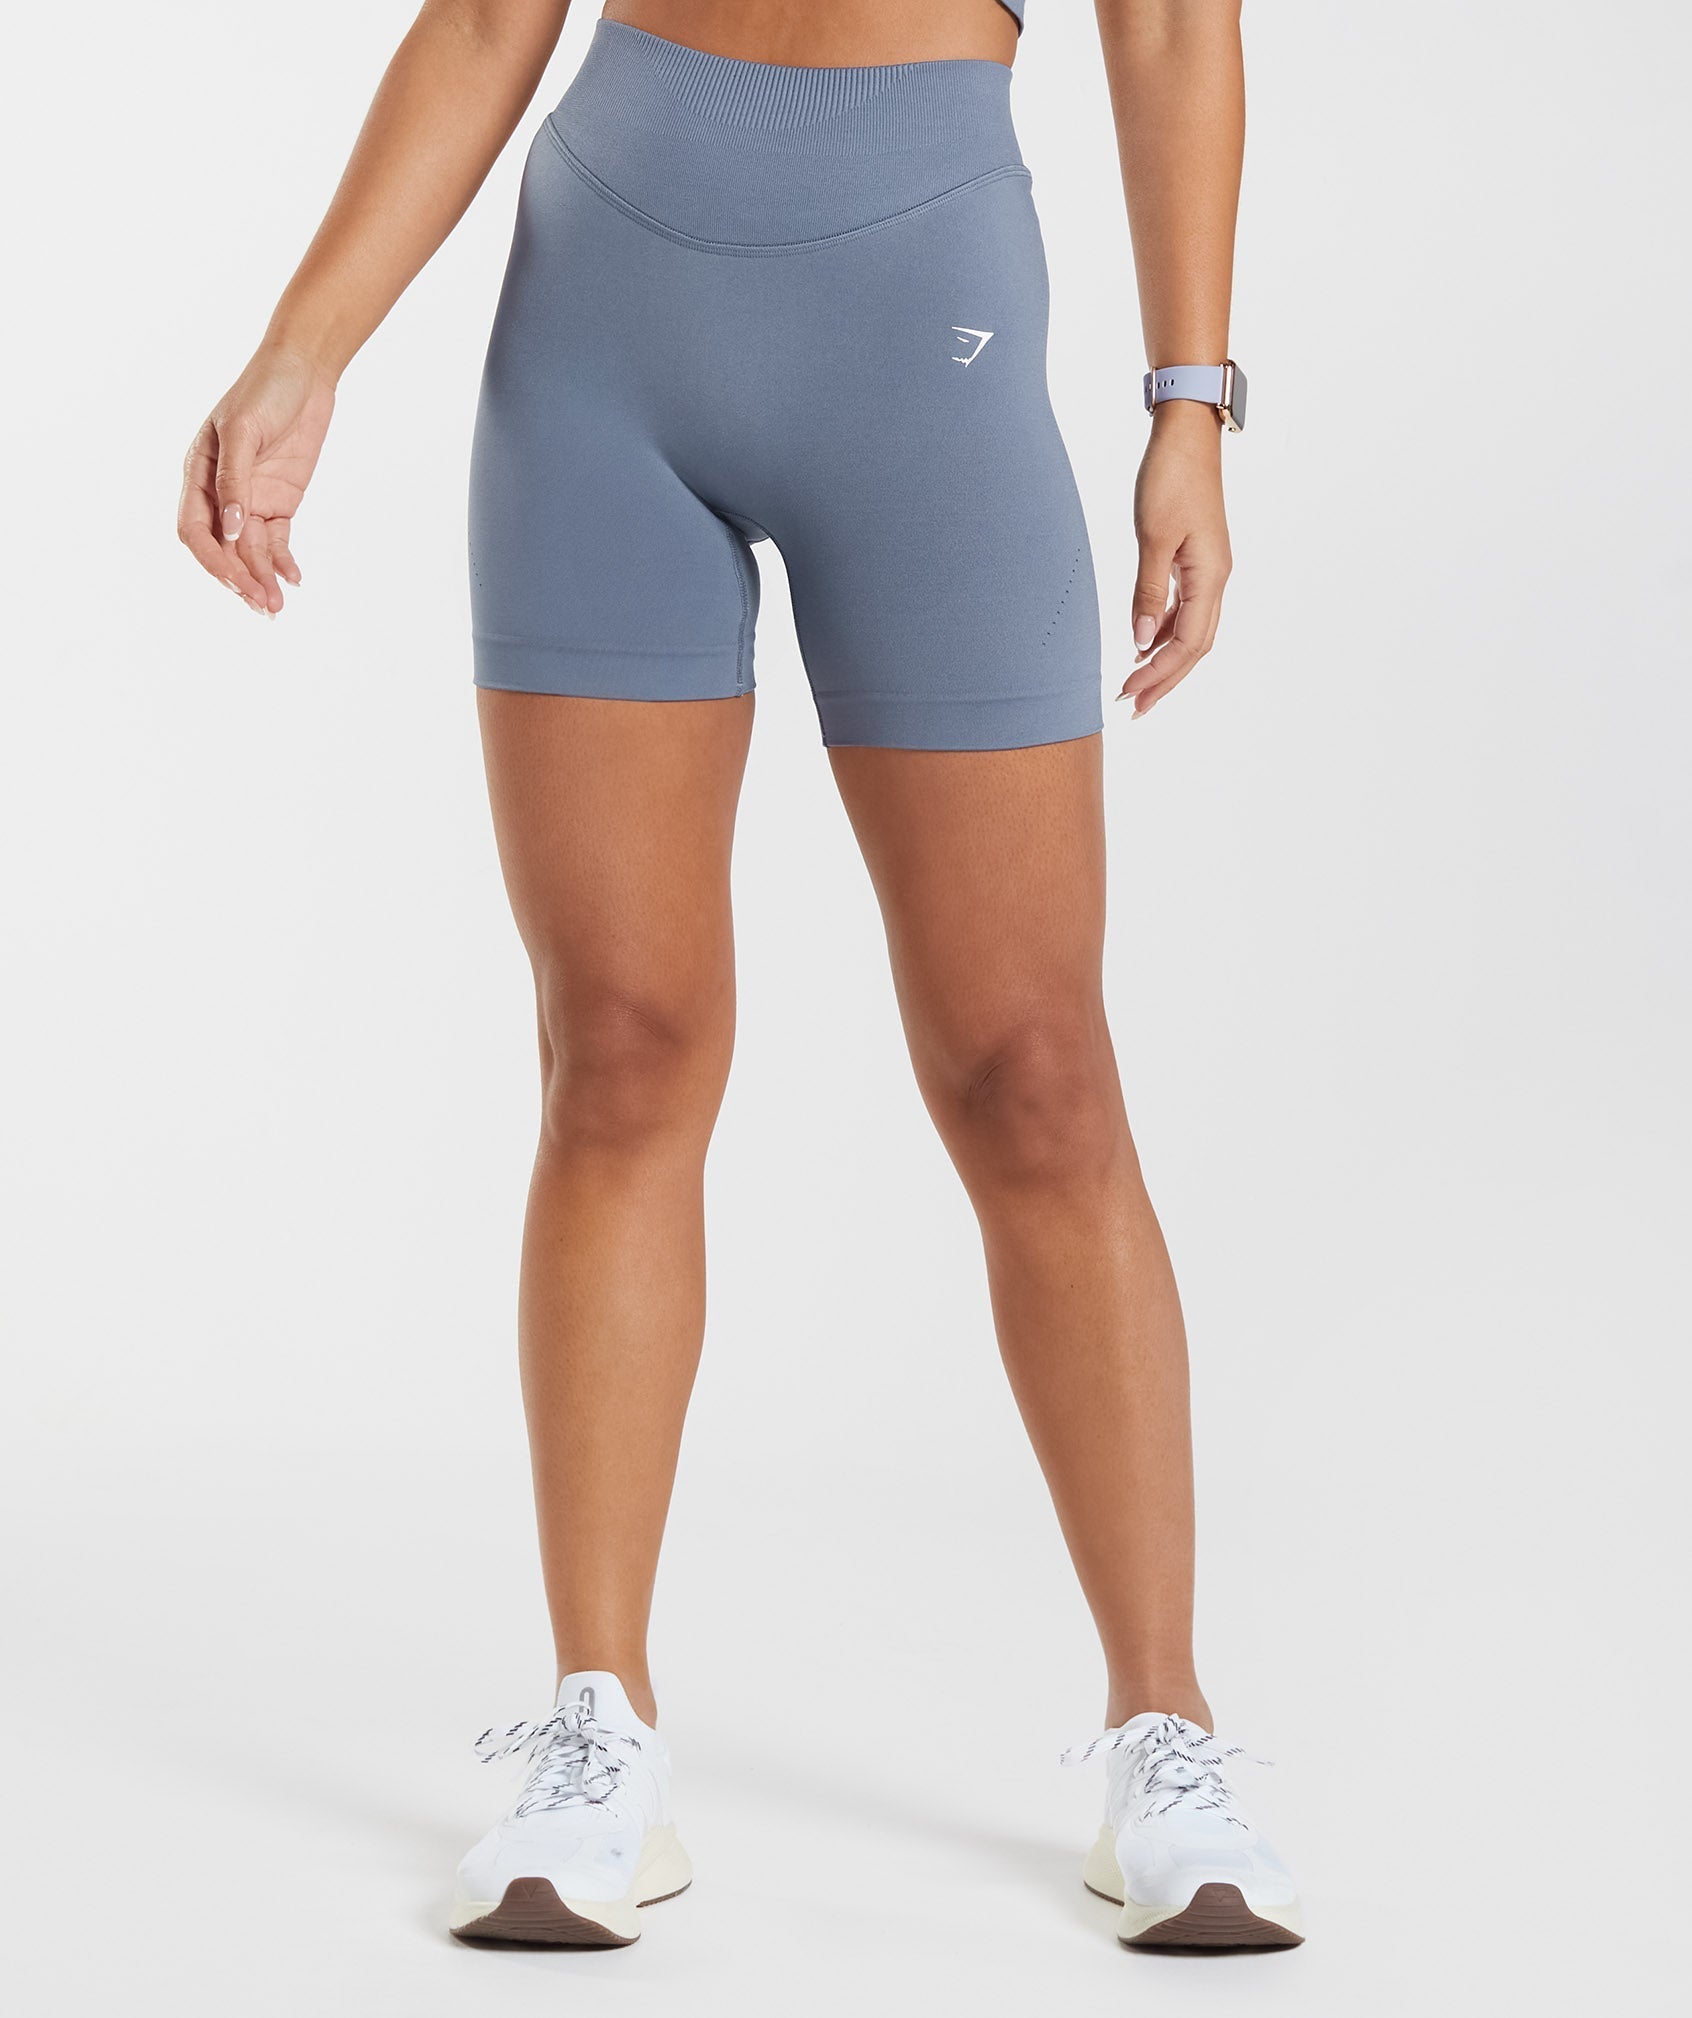 Sweat Seamless Shorts, 45% OFF